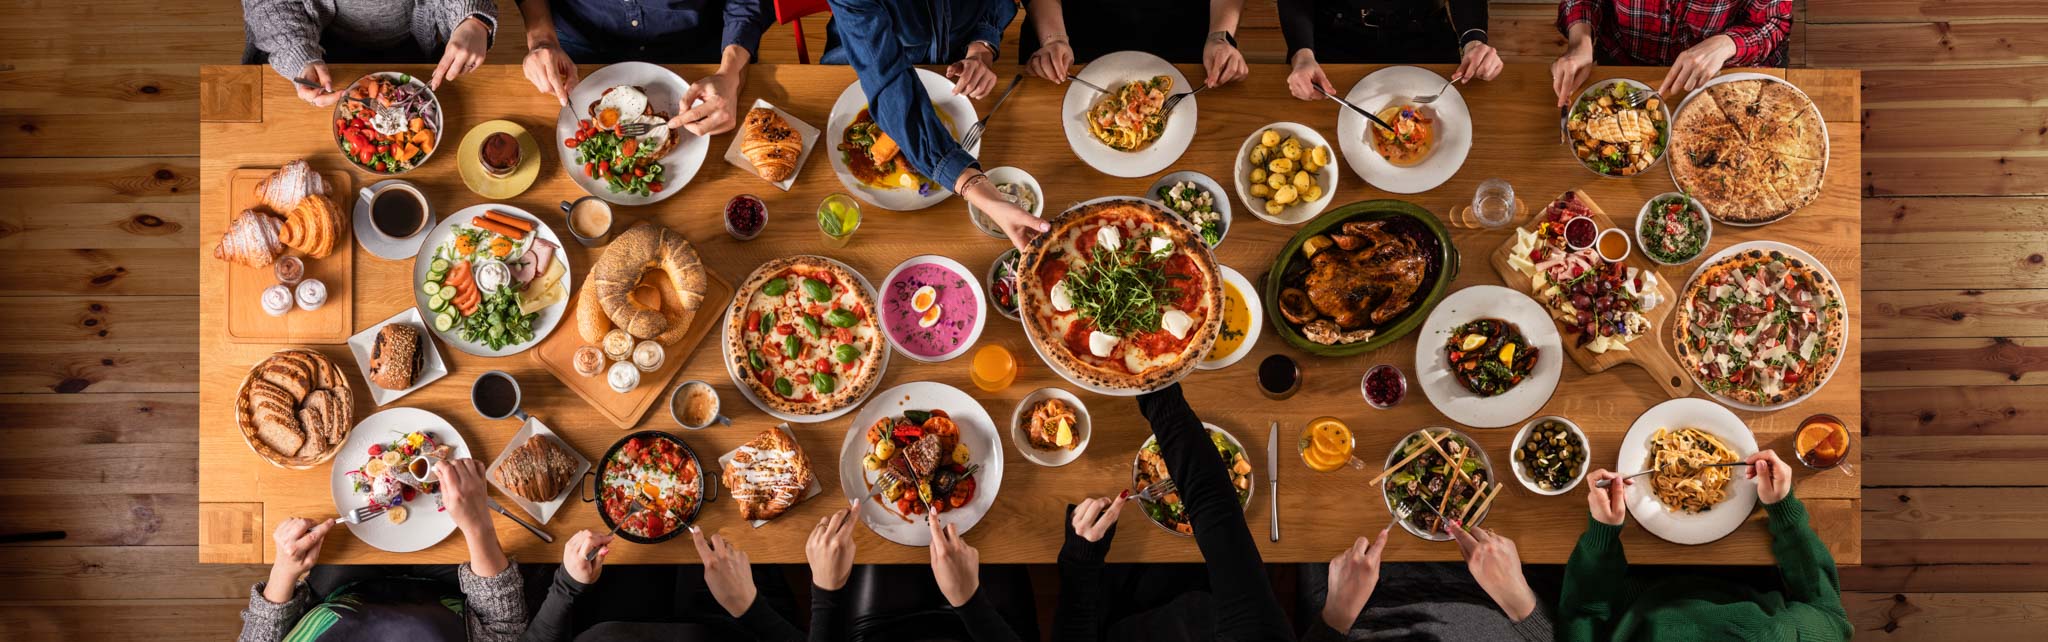 fotografia stołu w restauracji pełnego jedzenia z siedzącymi ludźmi, zdjęcie z góry.